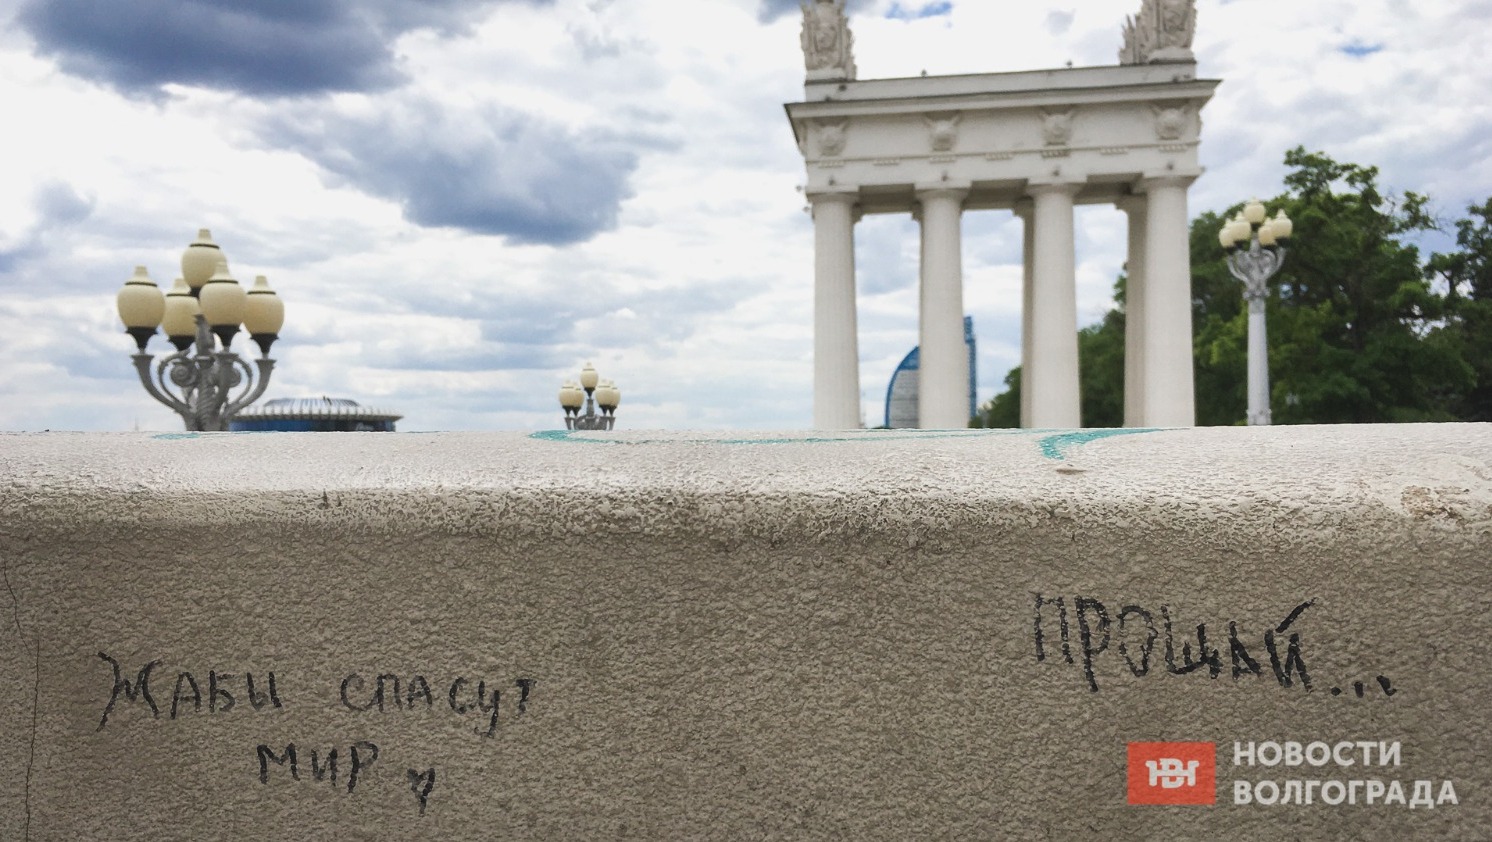 Надписи на колоннах вполне свежие - 06.06.2023 - с днём рождения, Александр Сергеевич